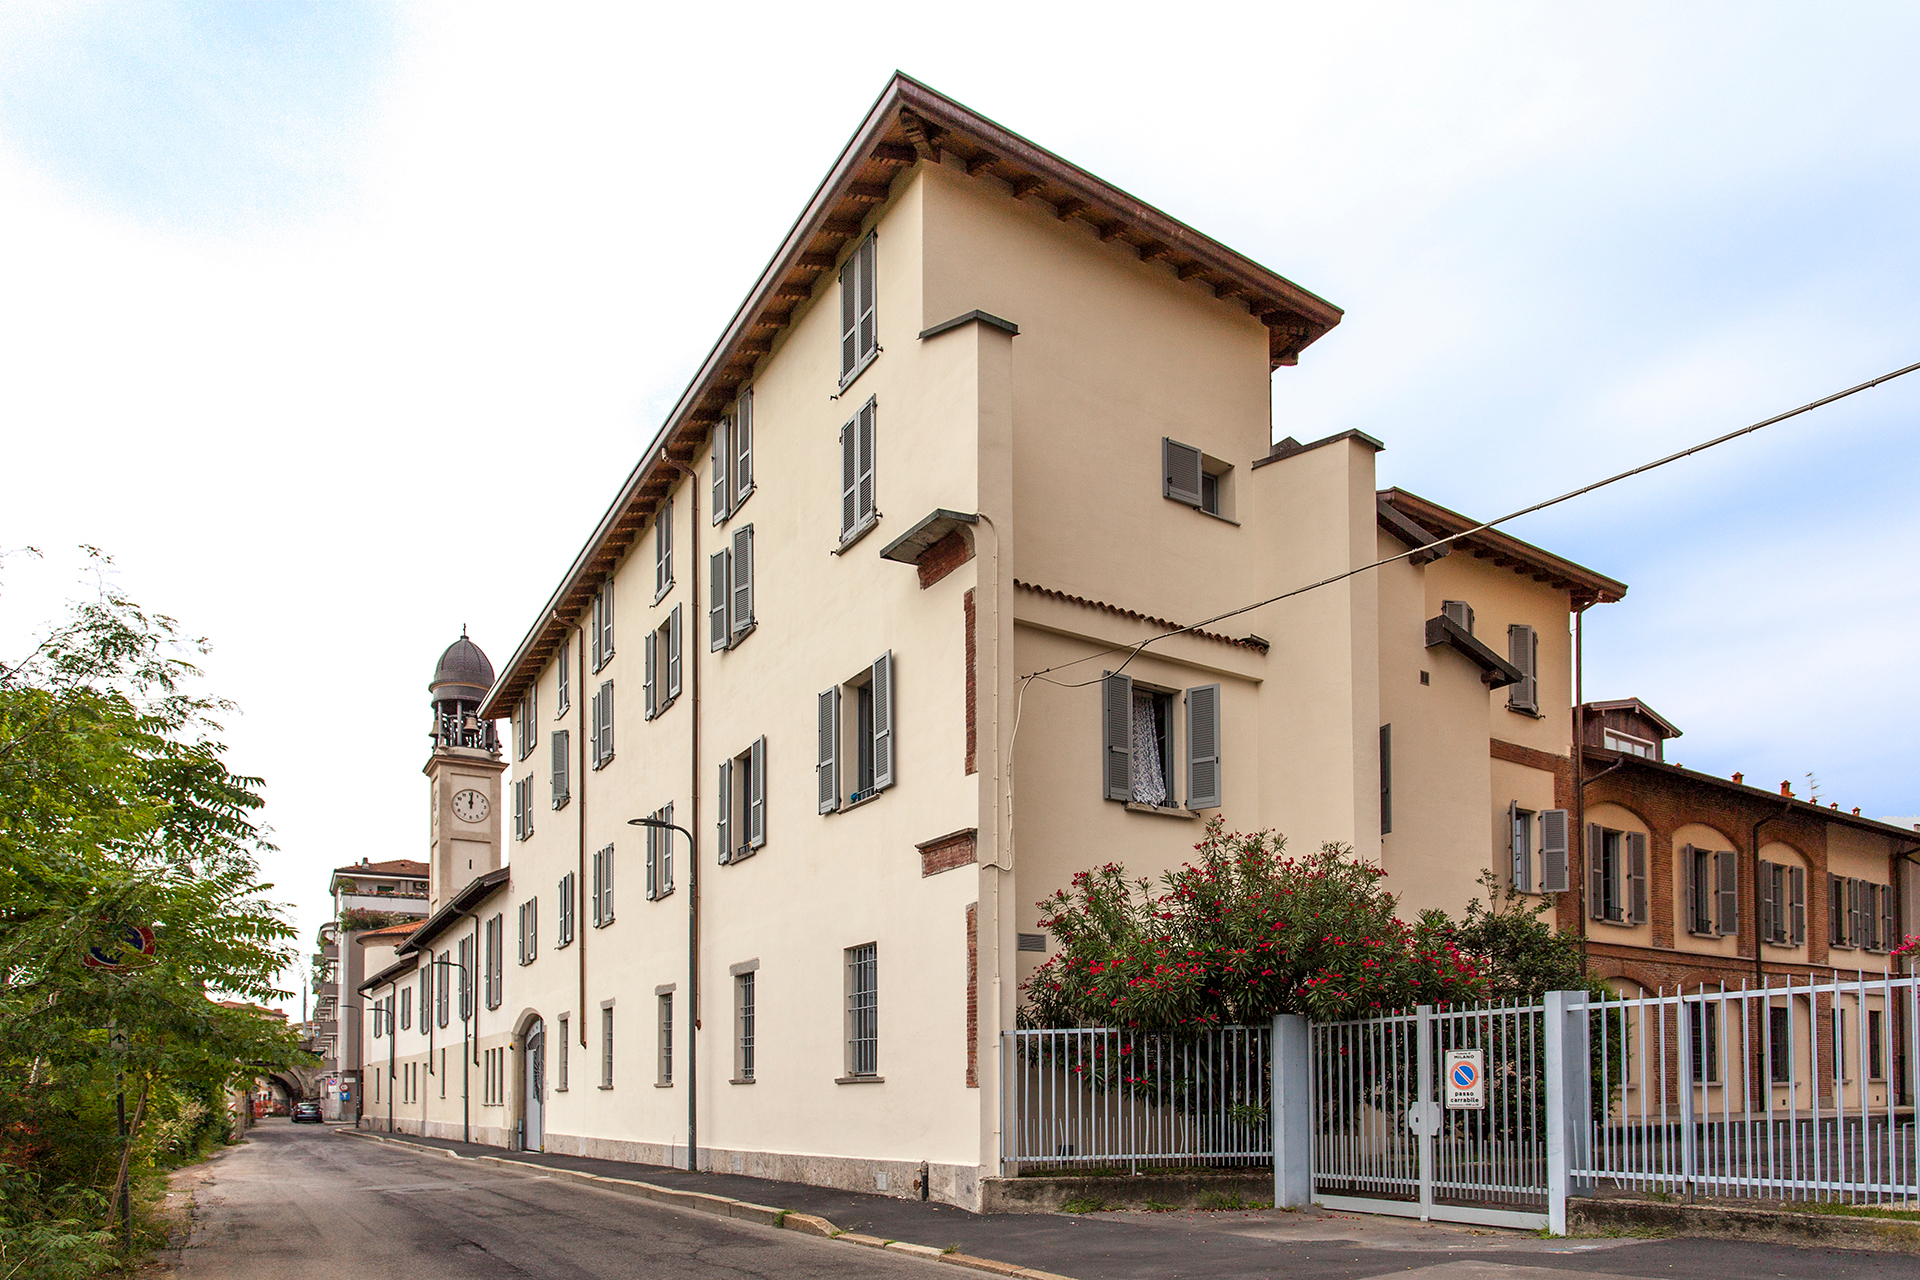 Architetto Roberto Bagnato - Milano Porta Nuova - Housing Sociale